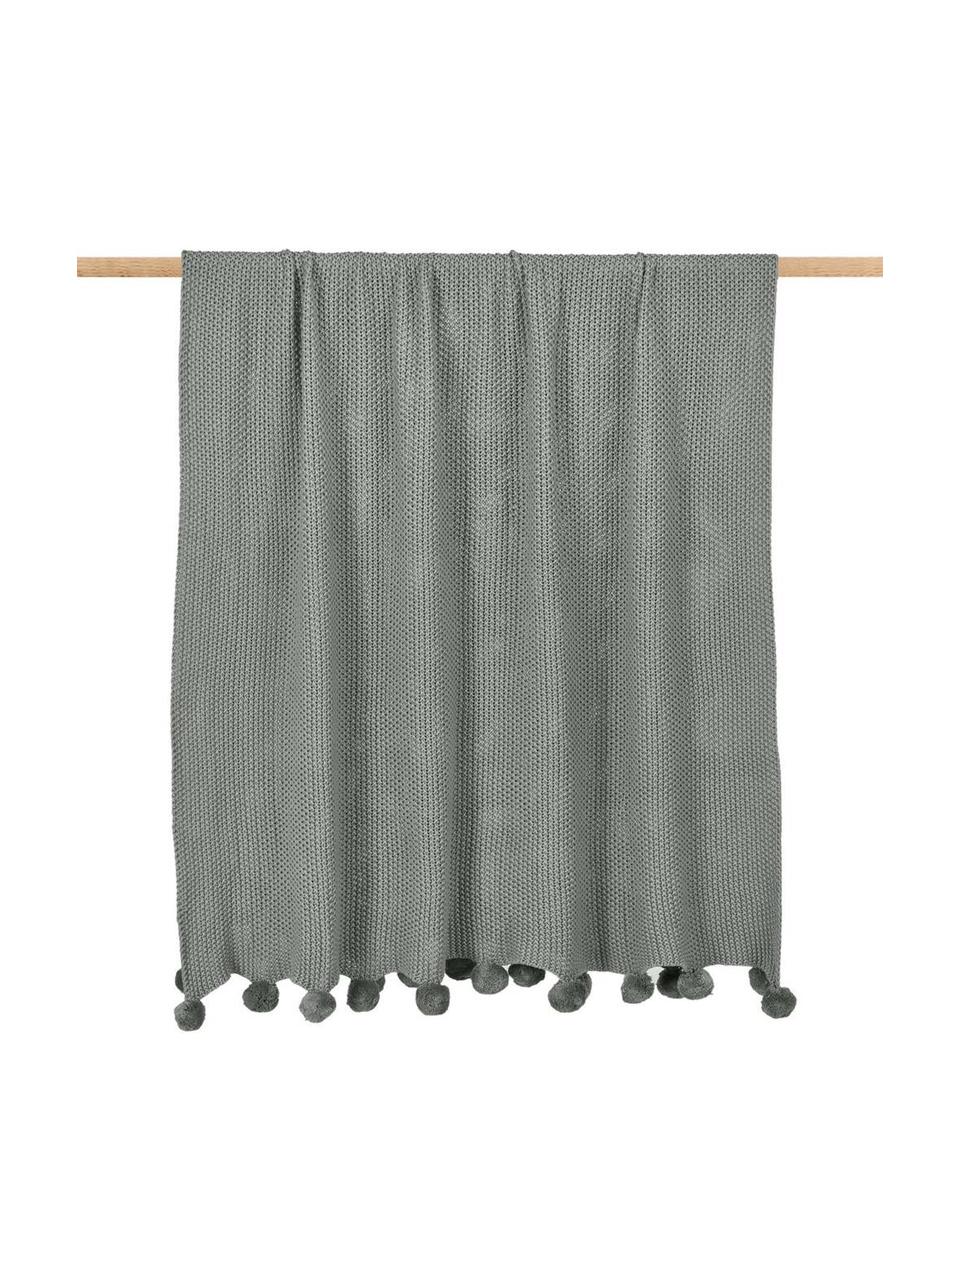 Coperta a maglia con pompon Molly, 100% cotone, Verde oliva, Larg. 130 x Lung. 170 cm